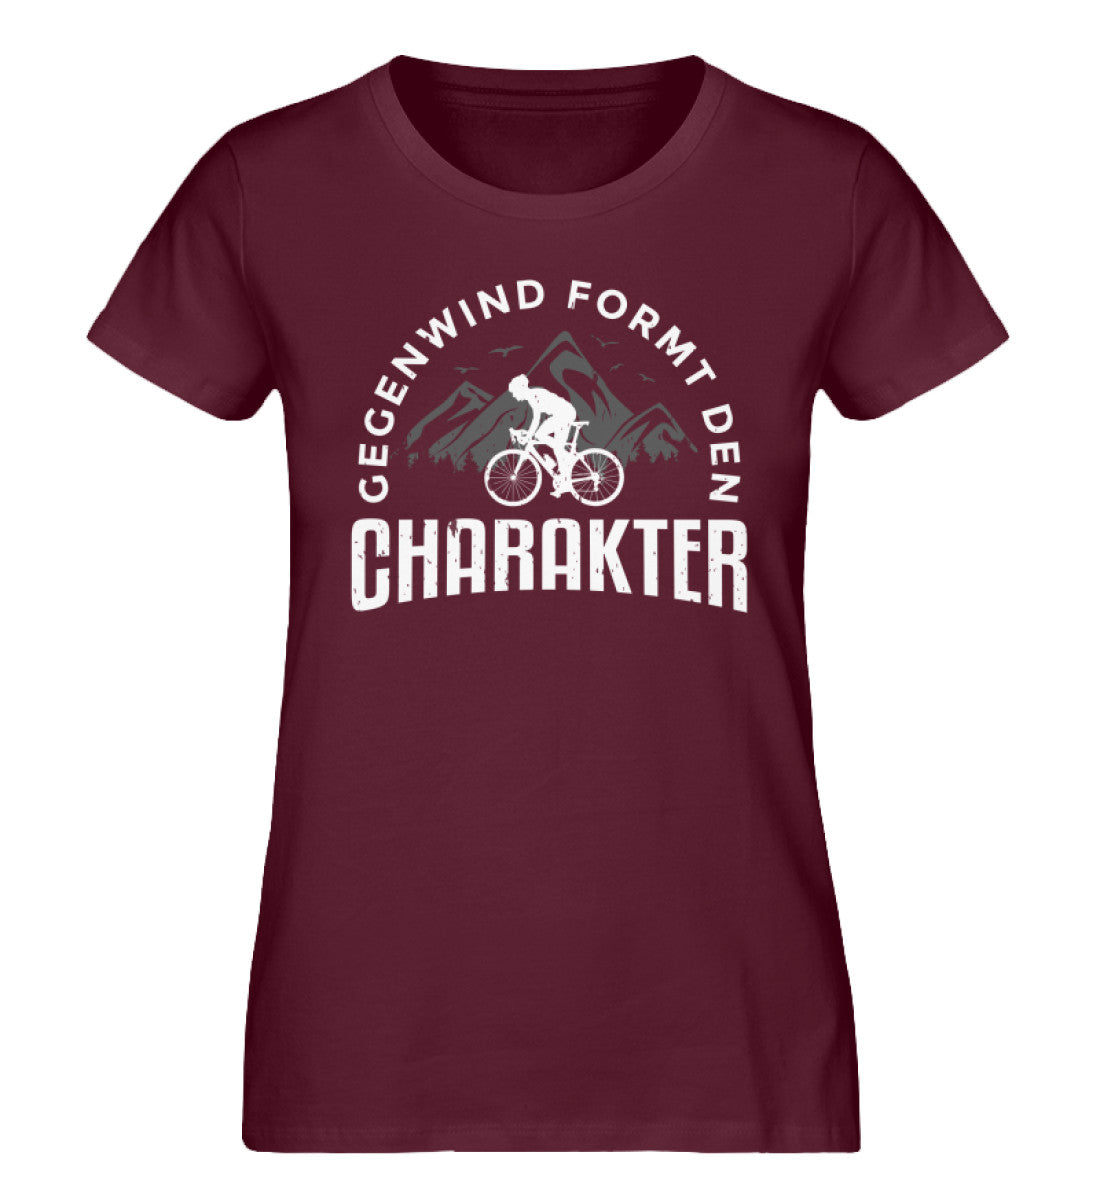 Gegenwind formt den Charakter - Damen Organic T-Shirt fahrrad mountainbike Weinrot